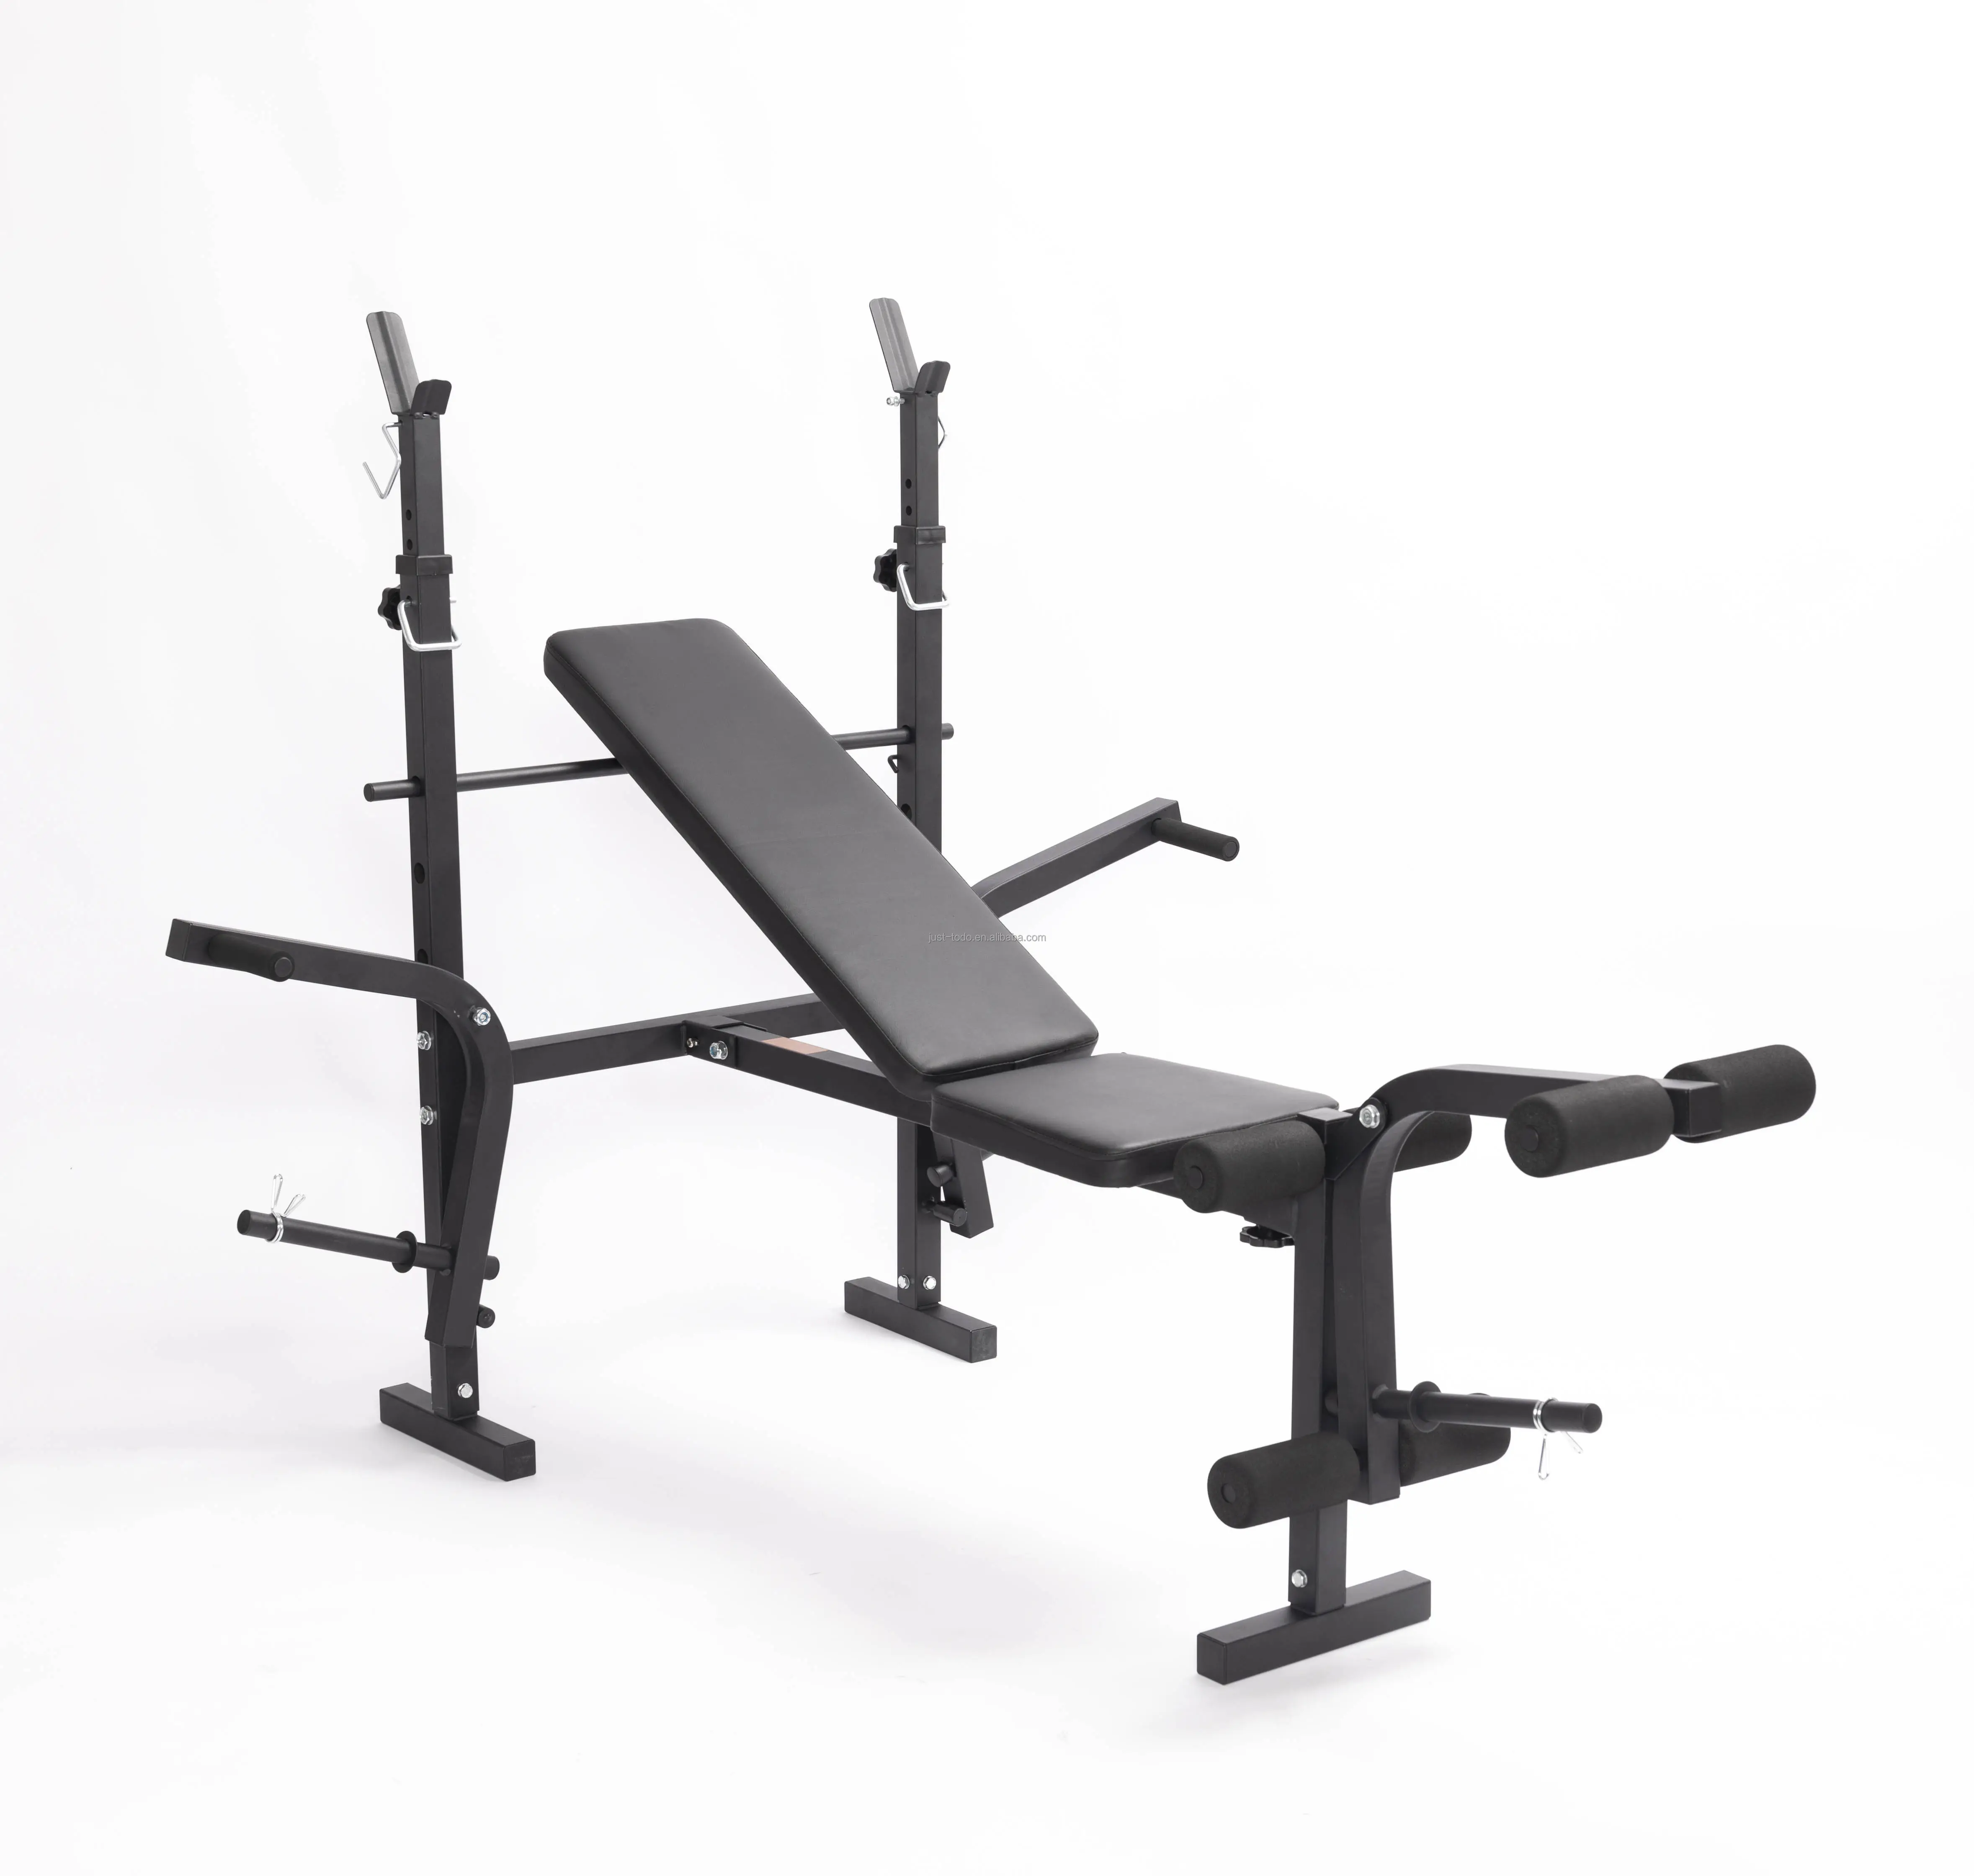 Banco de entrenamiento de fuerza ajustable, equipo de ejercicio de gimnasio, Banco de pesas para sentarse, prensa sentadillas con plegado rápido, nueva versión